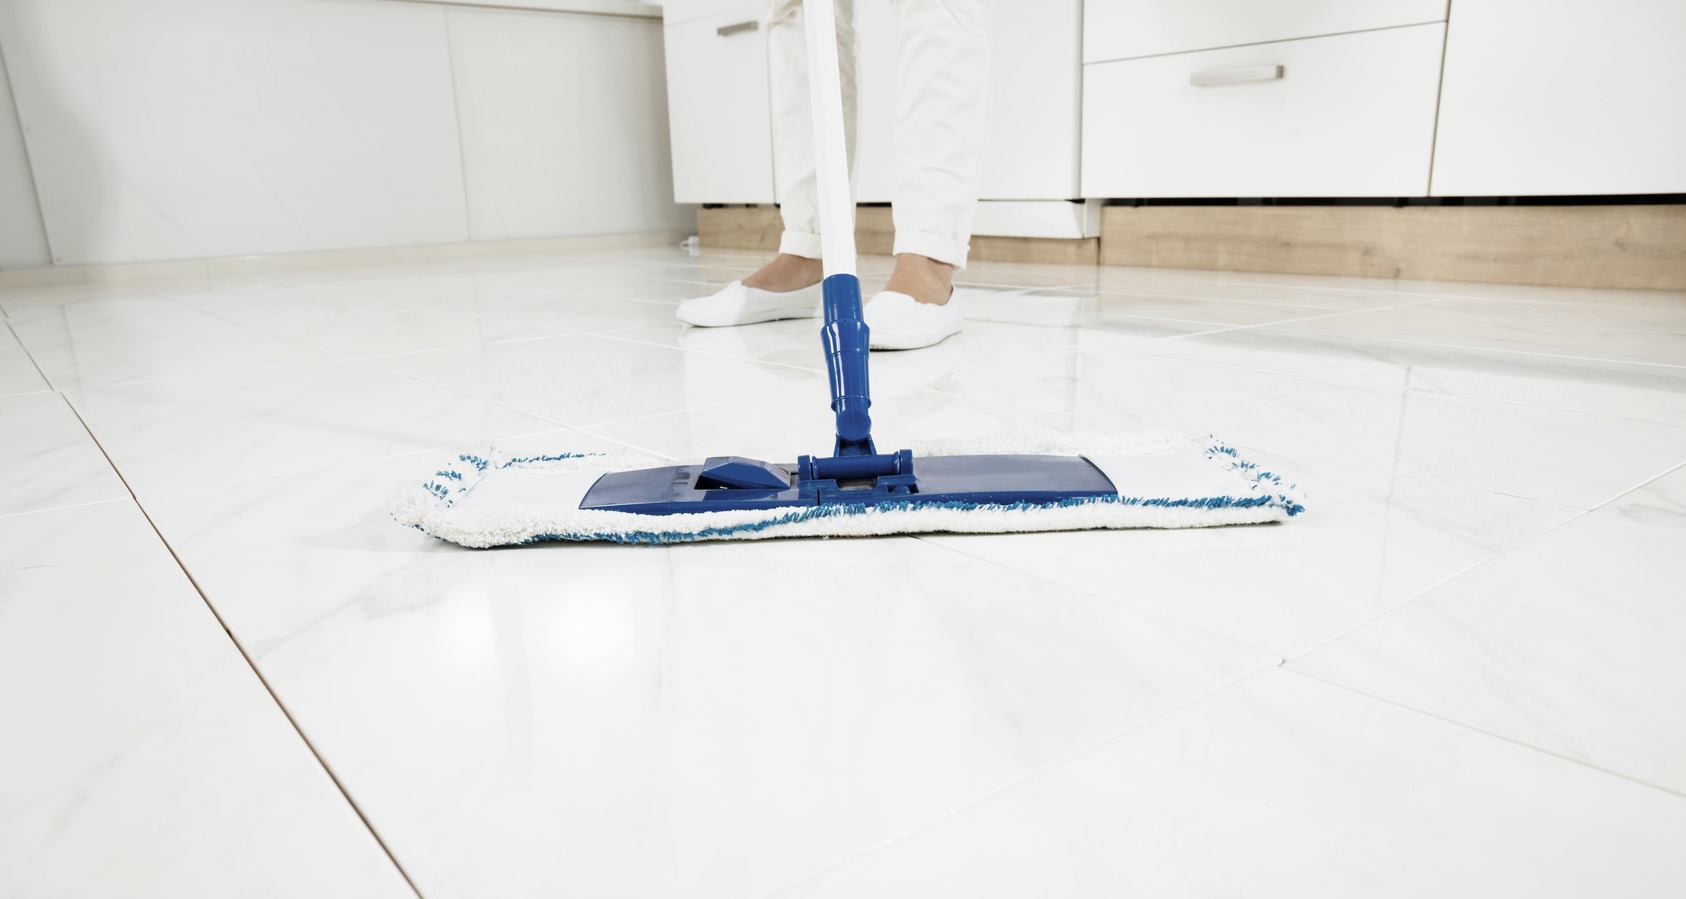 Applicazioni: Come pulire le fughe del pavimento